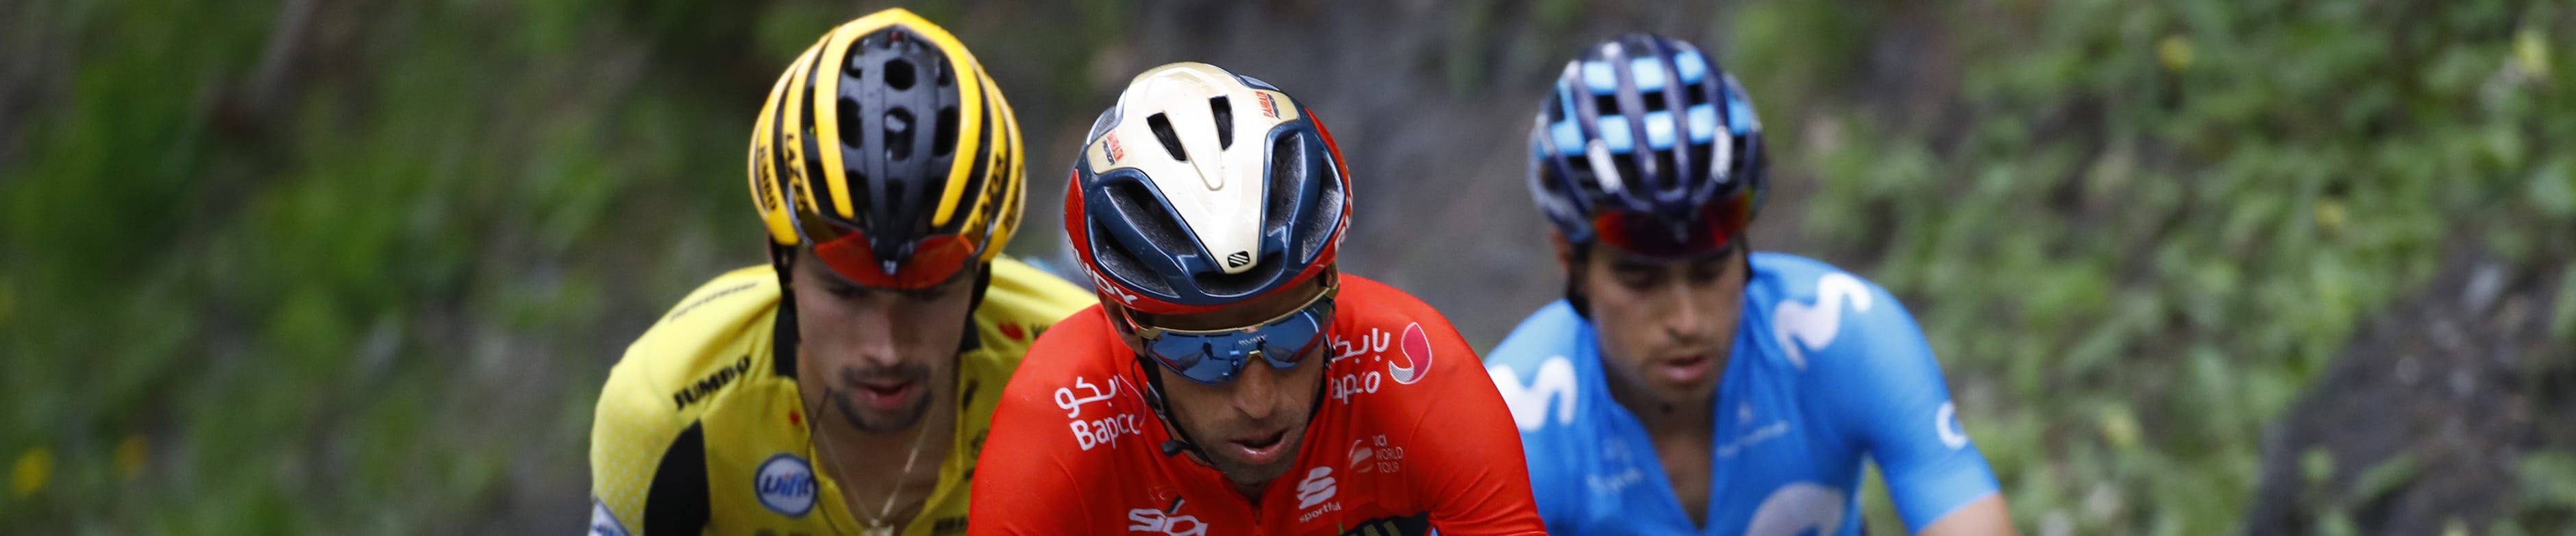 Giro d'Italia: dopo le Alpi si va verso Como, sulle strade amate dallo Squalo...